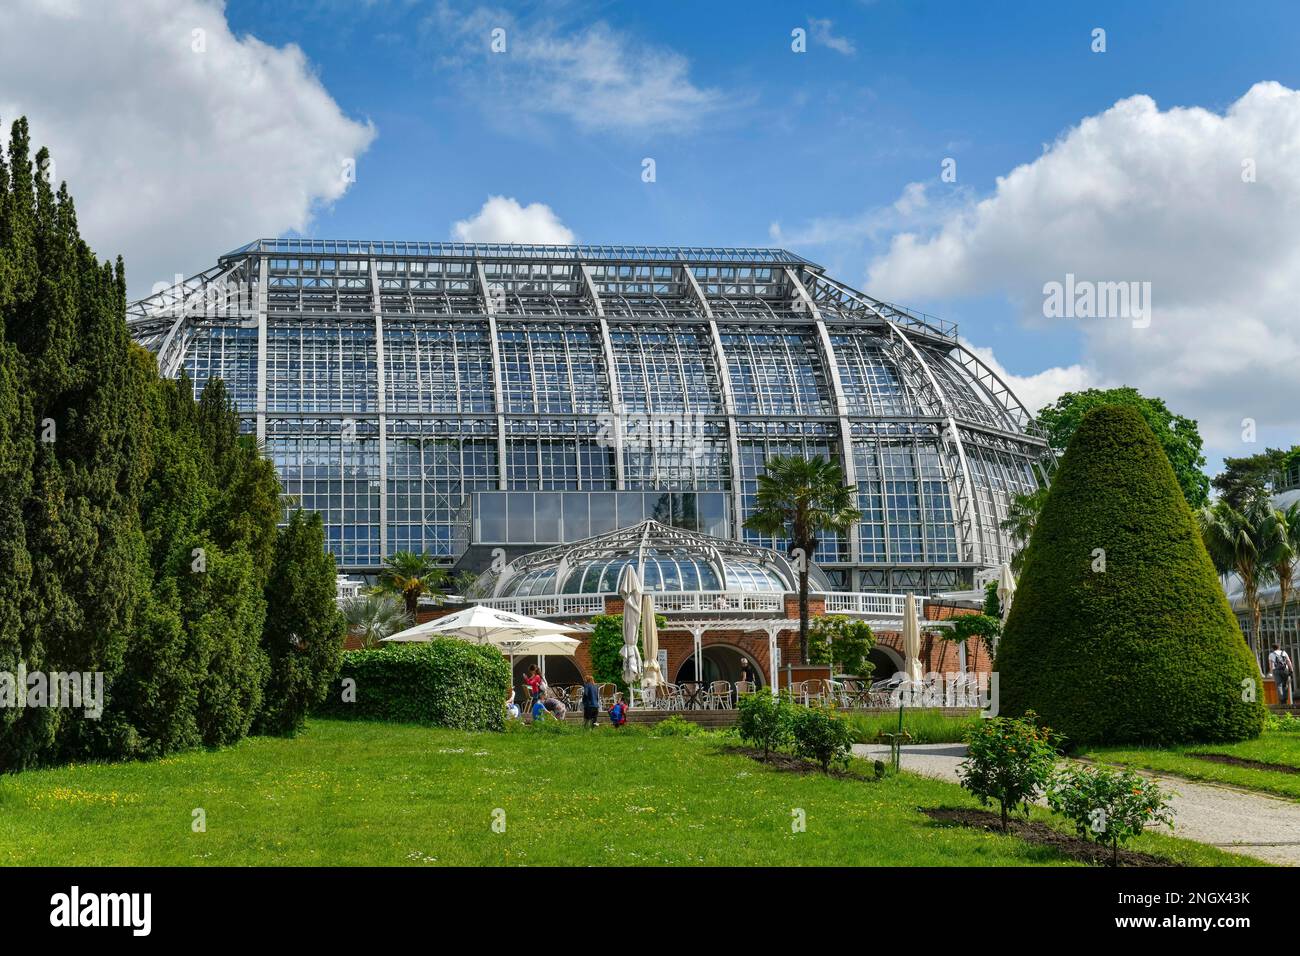 Grande maison tropicale, jardin botanique, Koenigin-Luise, Lichterfelde, Steglitz-Zehlendorf, Berlin, Allemagne, Koenigin-Luise-Strasse Banque D'Images